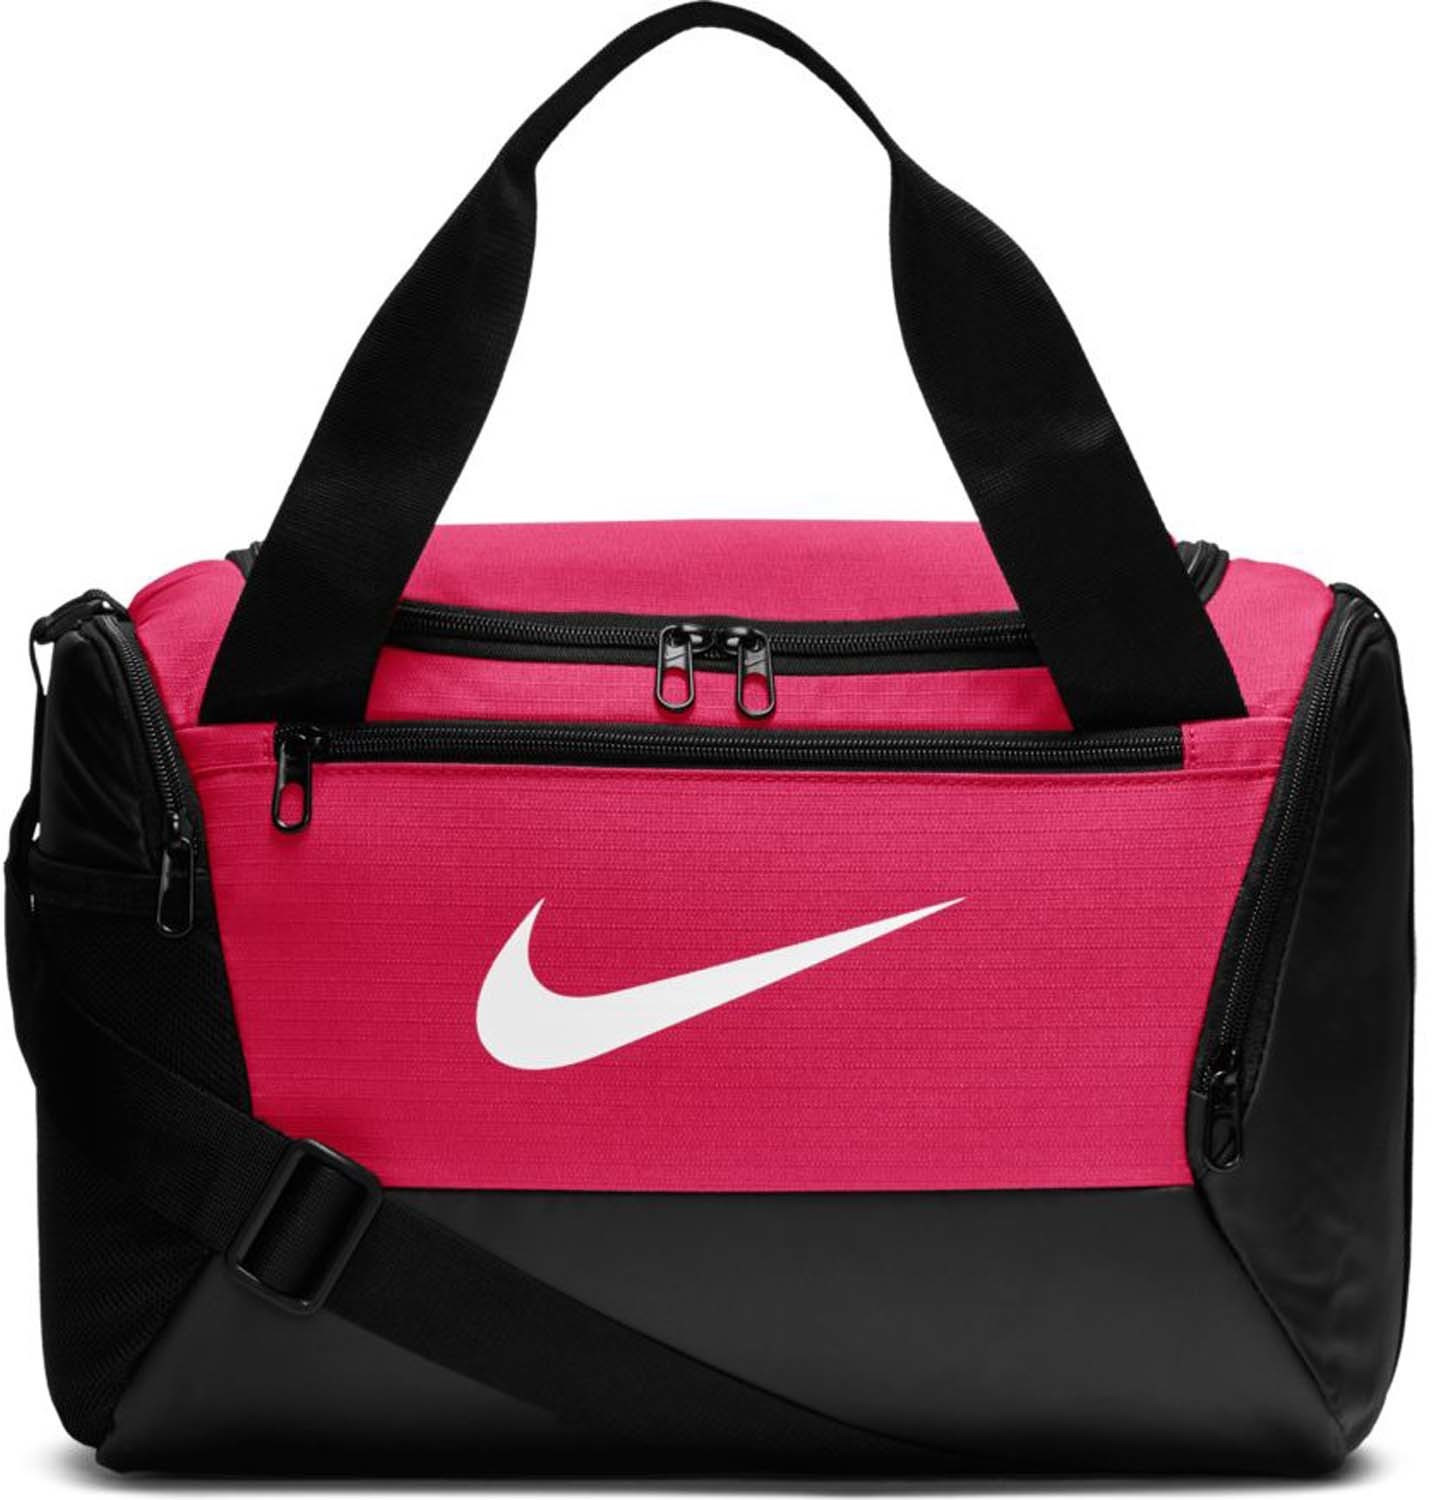 Nike Brasilia XS (BA5961) rush pink/black/white